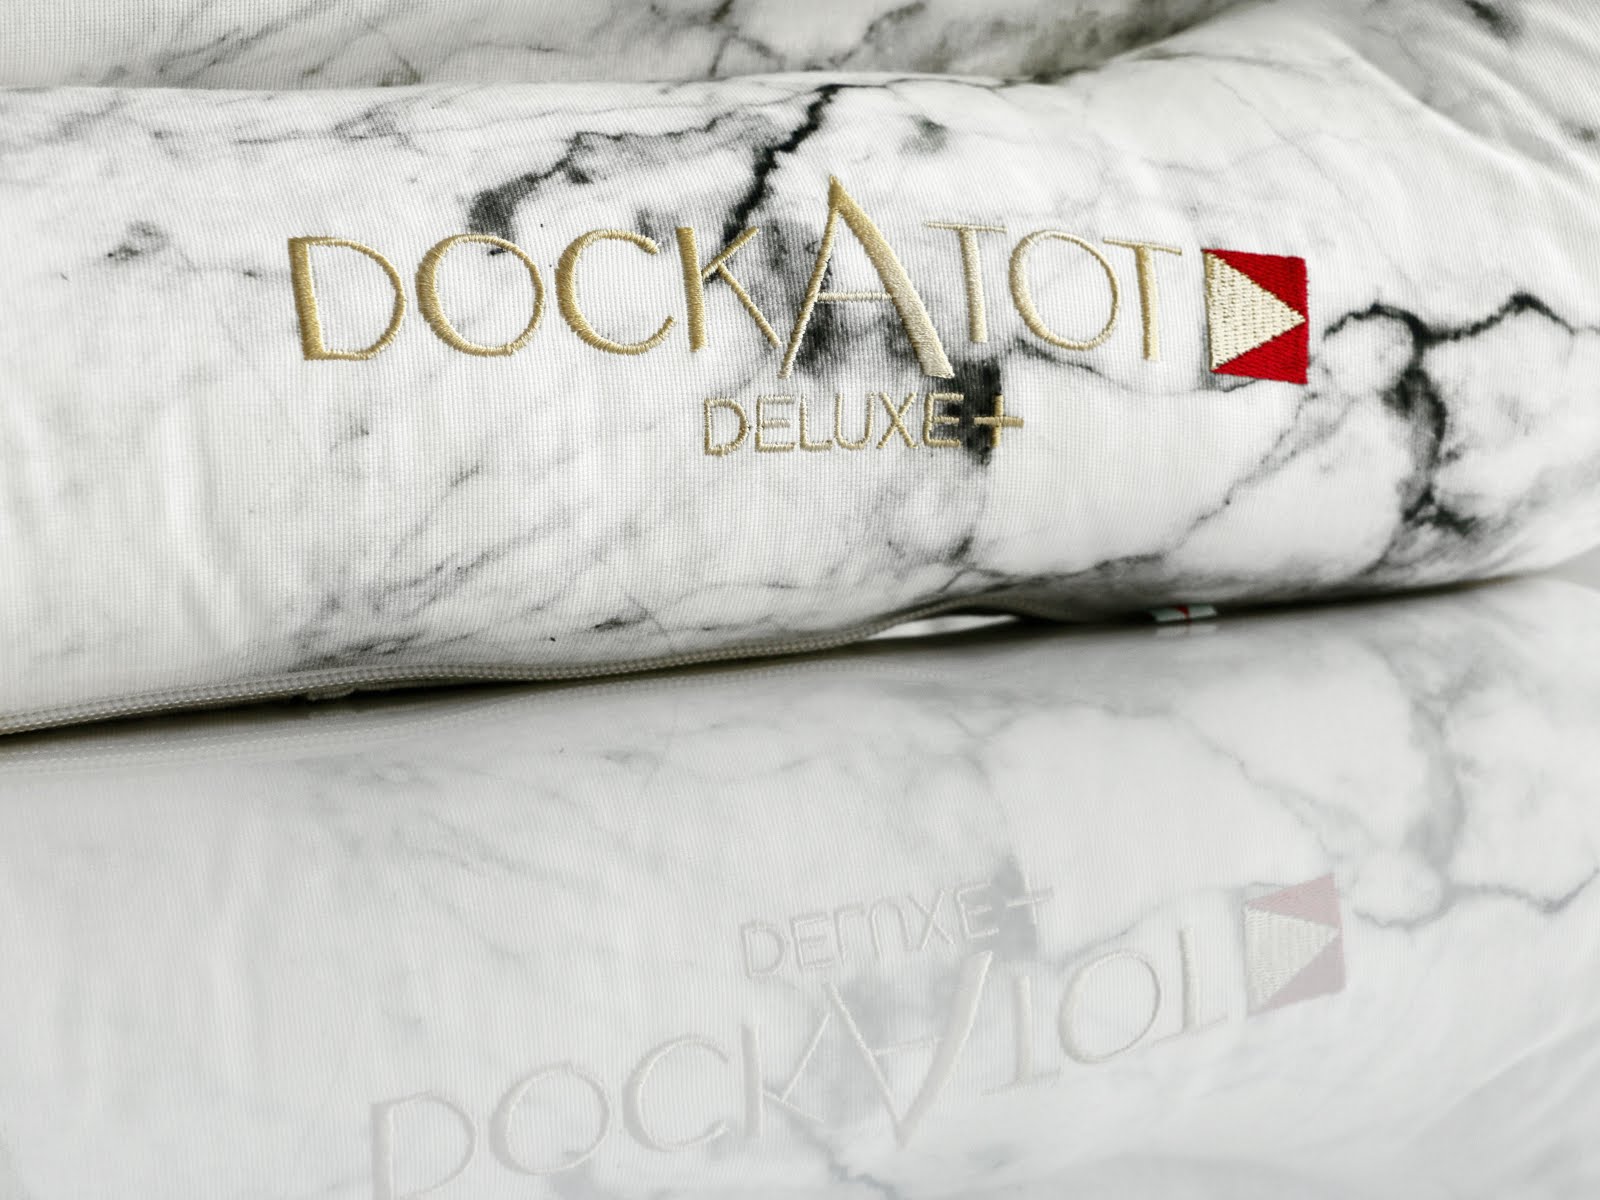 Dockatot-Deluxe-Dock-Carrara-Marble-Vivi-Brizuela